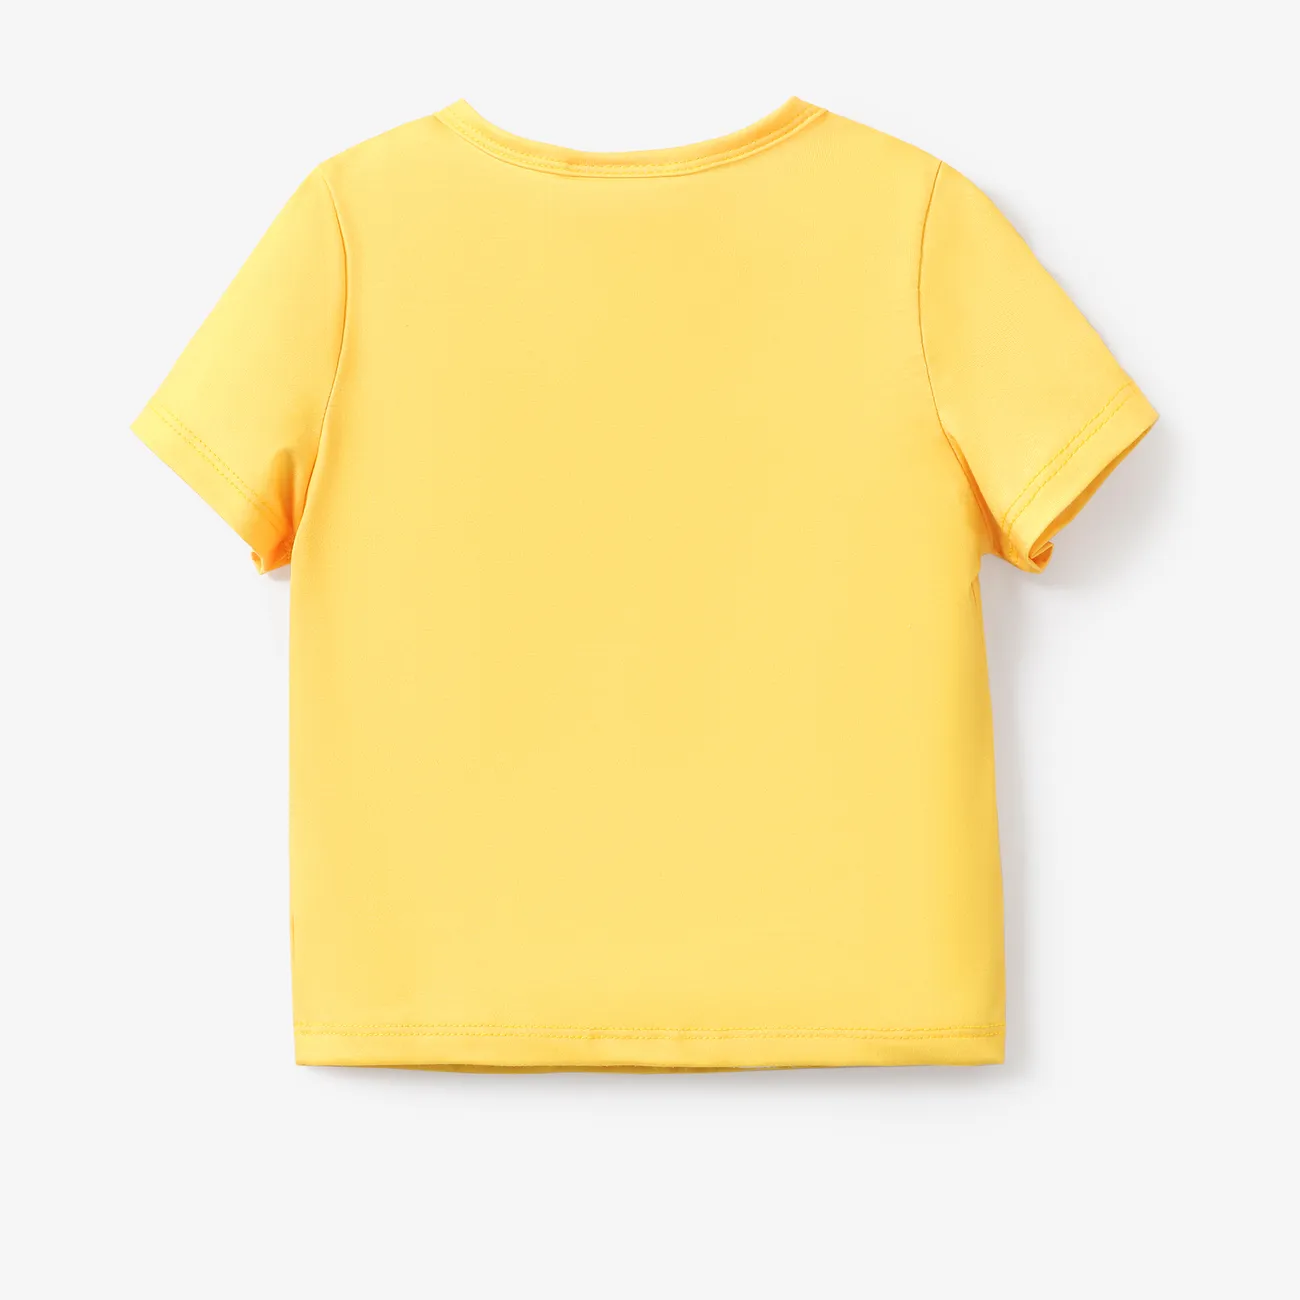 Patrulha Canina Unissexo Infantil T-shirts Amarelo big image 1